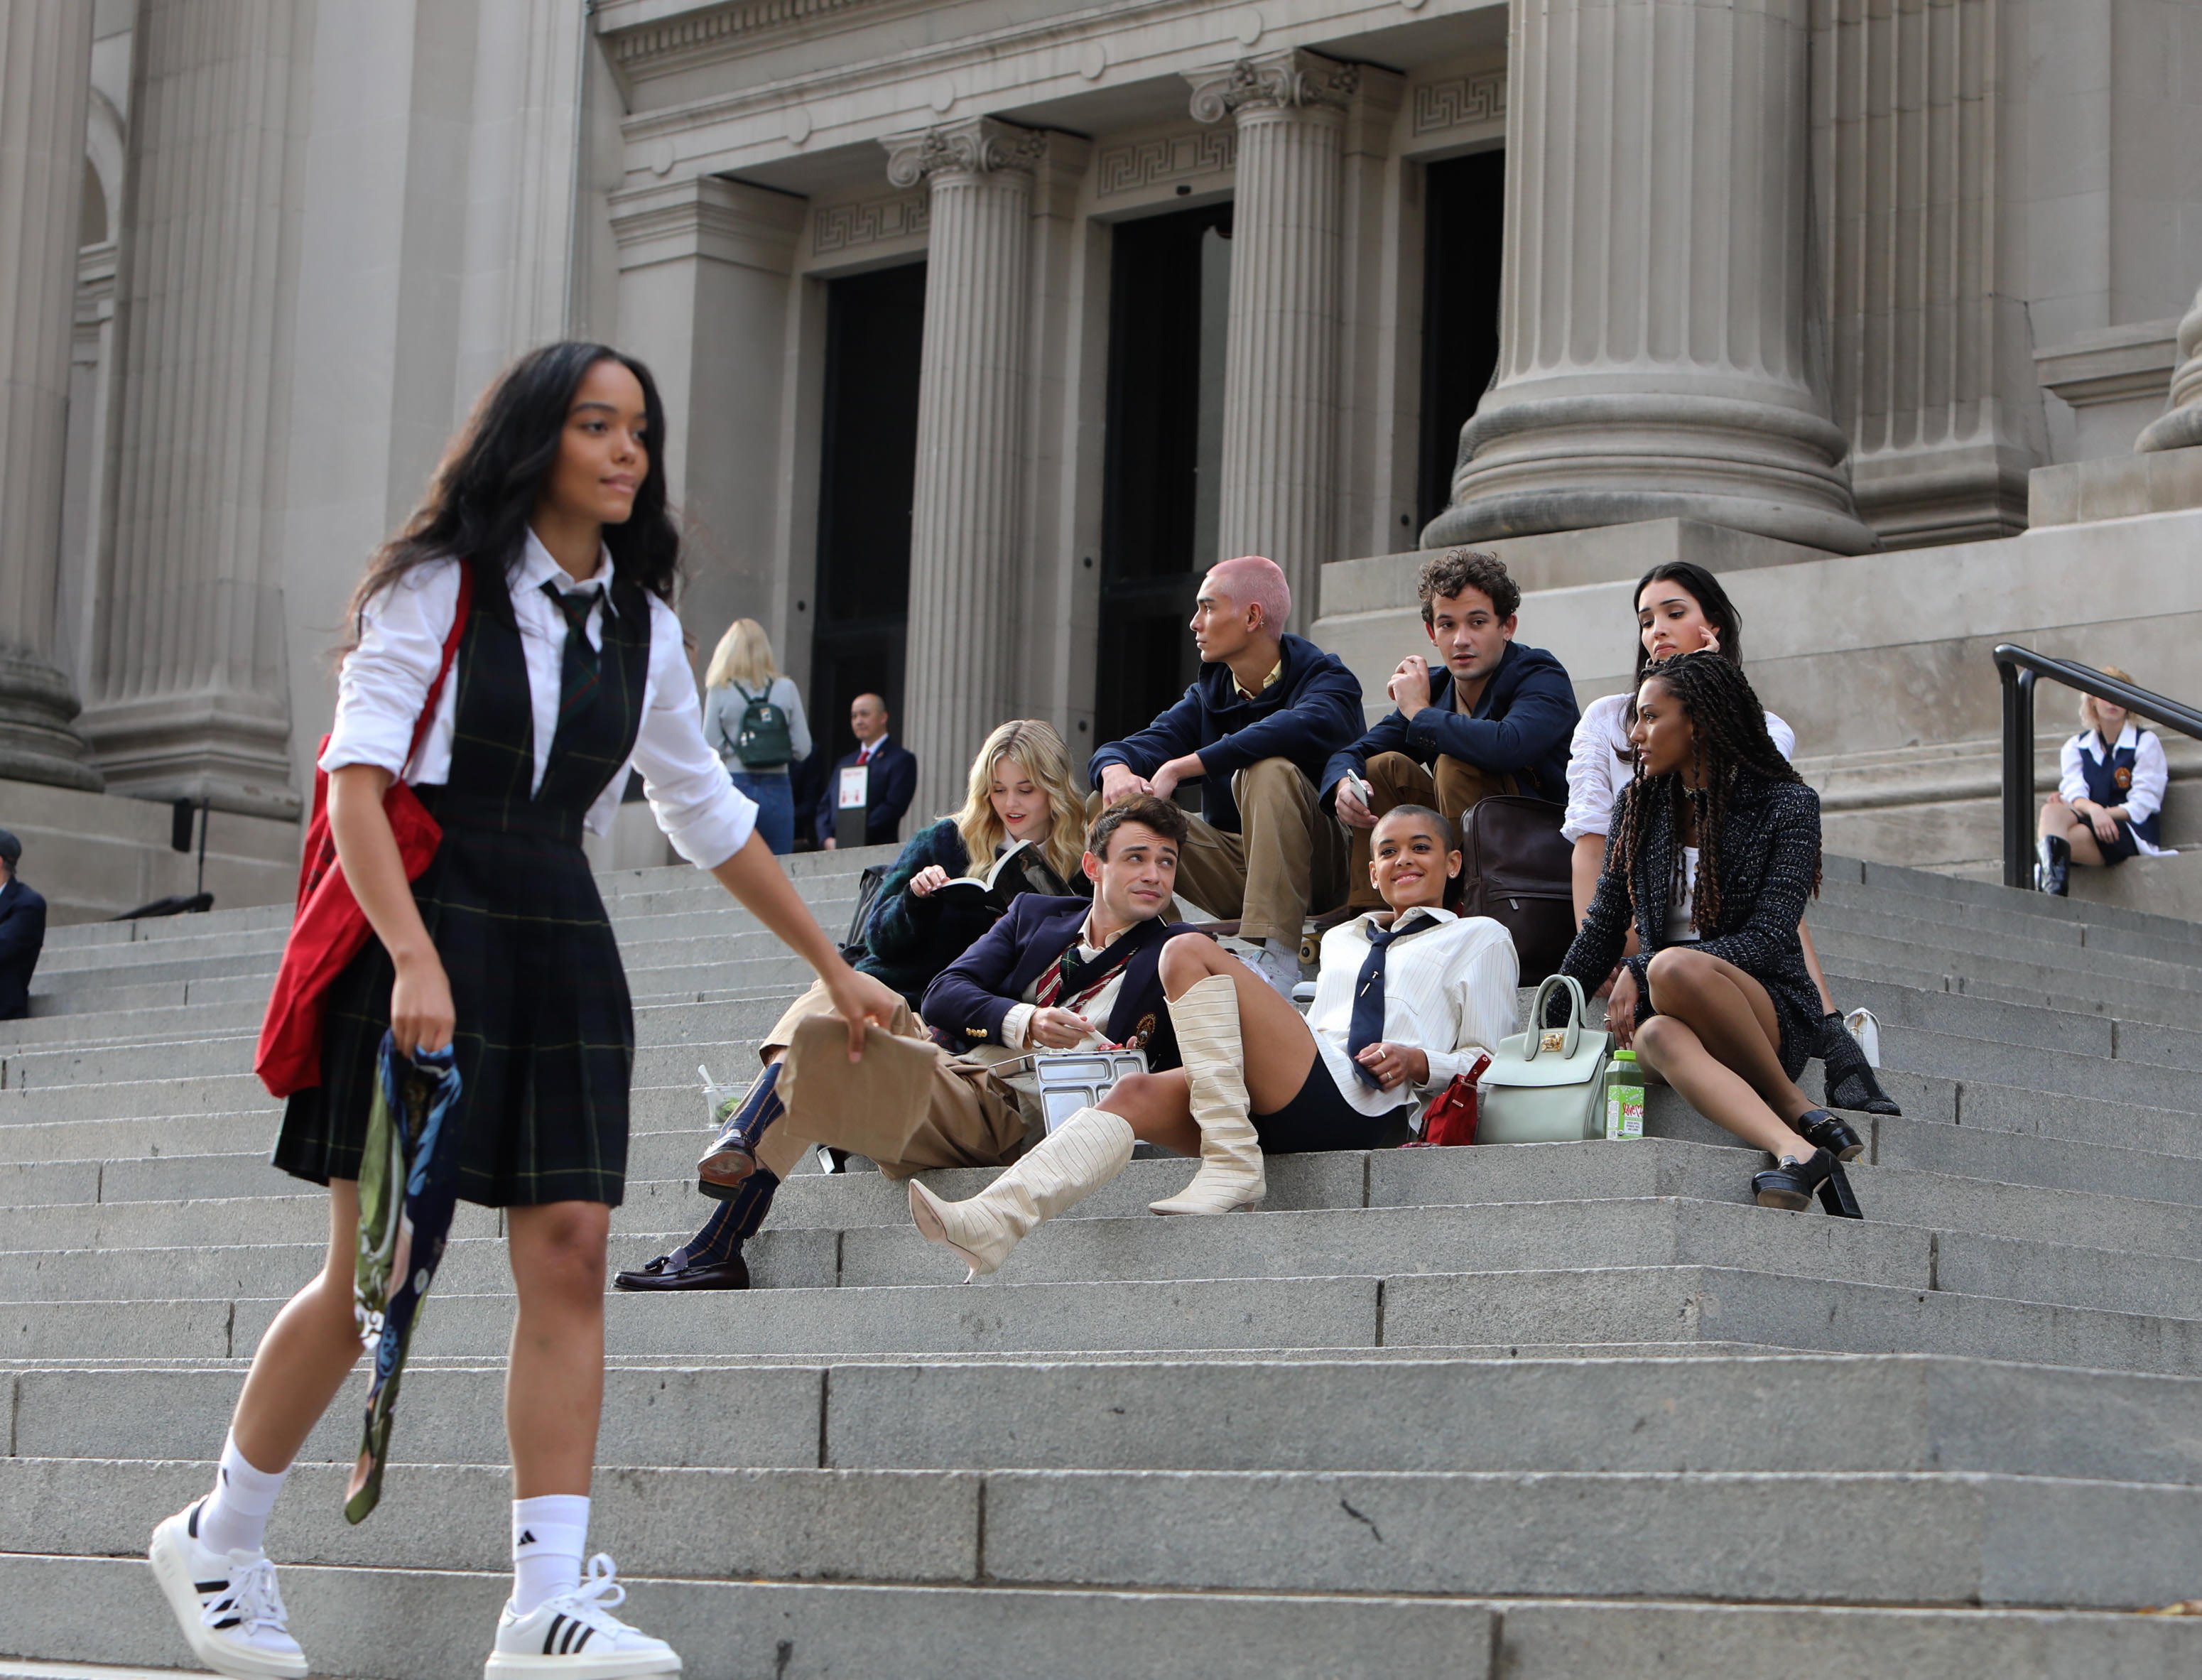 Elenco do reboot de Gossip Girl sentados na escadaria do MET, em Nova Iorque. Alguns atores estão olhando para tela ou sorrindo enquanto outros estão com expressões sérias. Uma da protagonista está passando por eles no primeiro plano da imagem